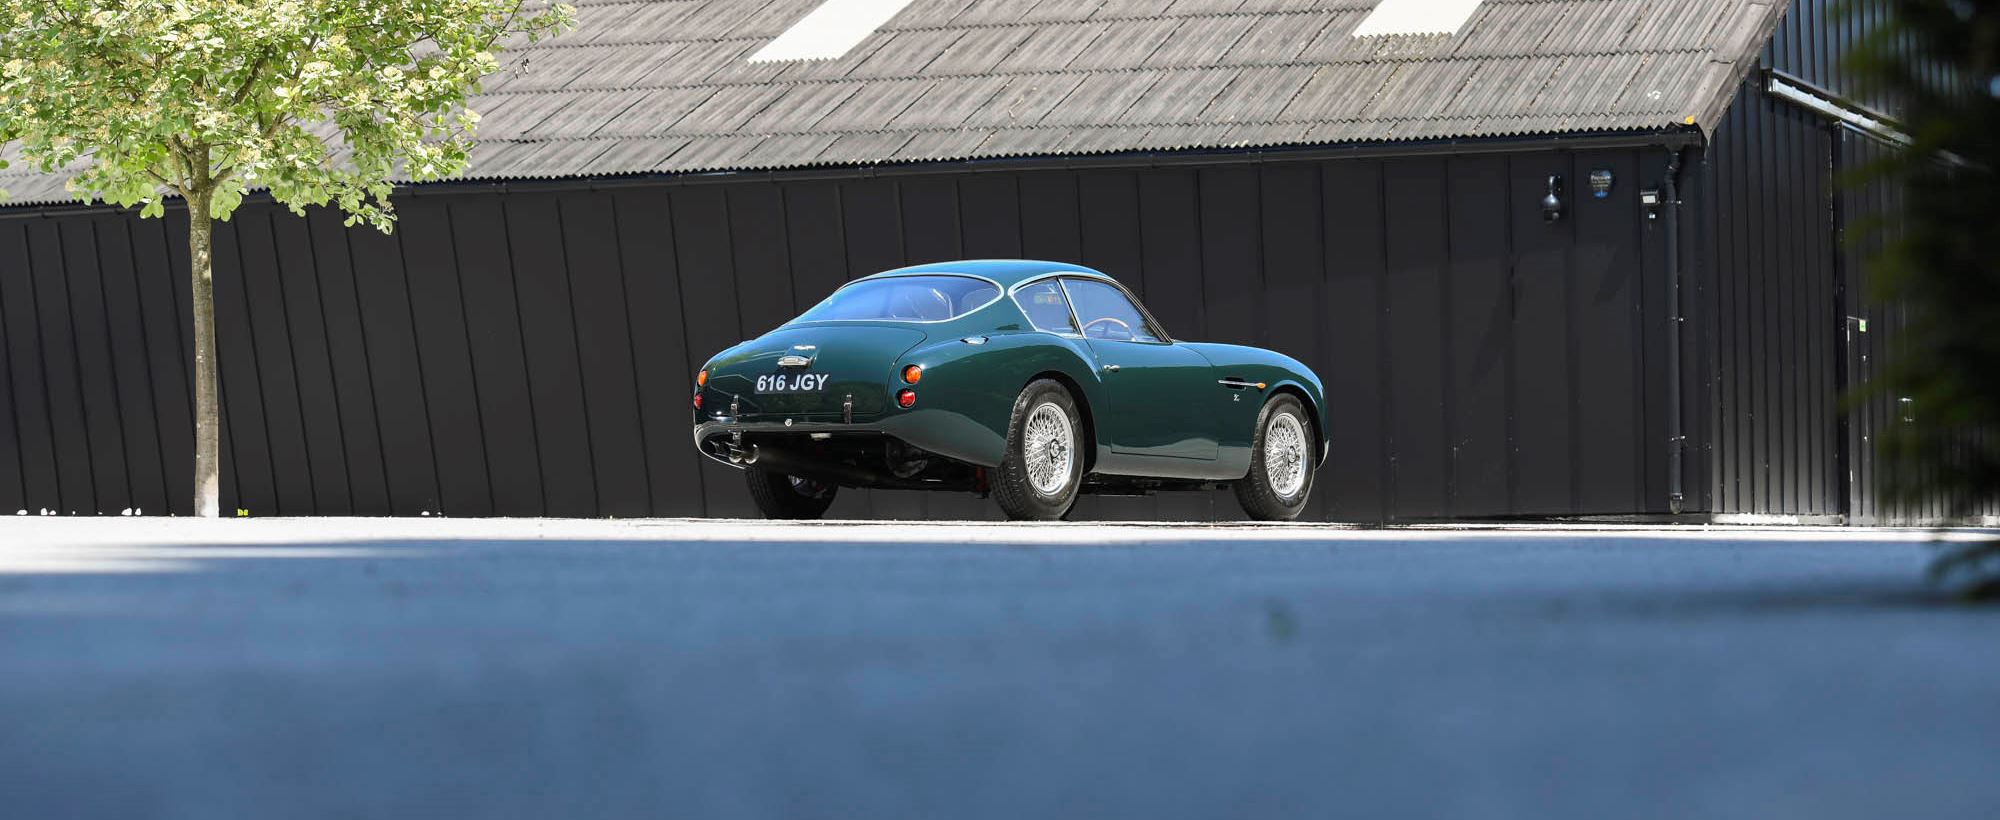 Aston Martin DB4 Zagato 040.jpg